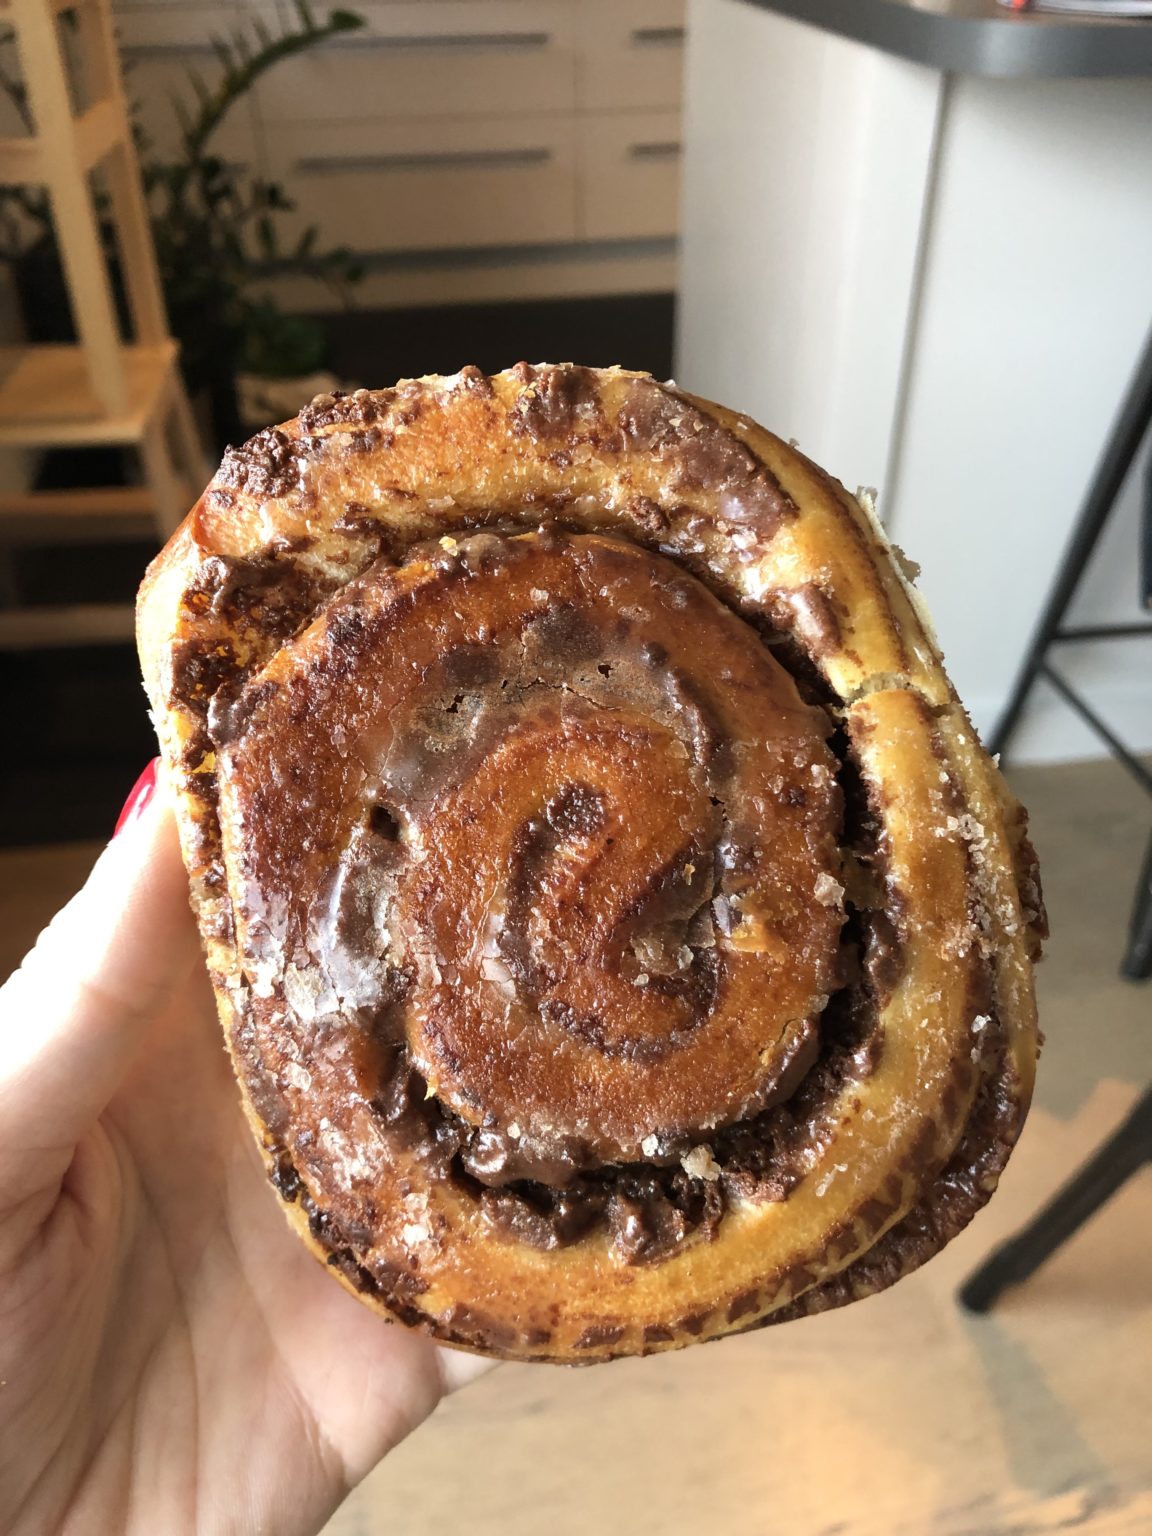 Le top 10 des cinnamon rolls à manger à Lyon, selon le blog Cinnamon and cake